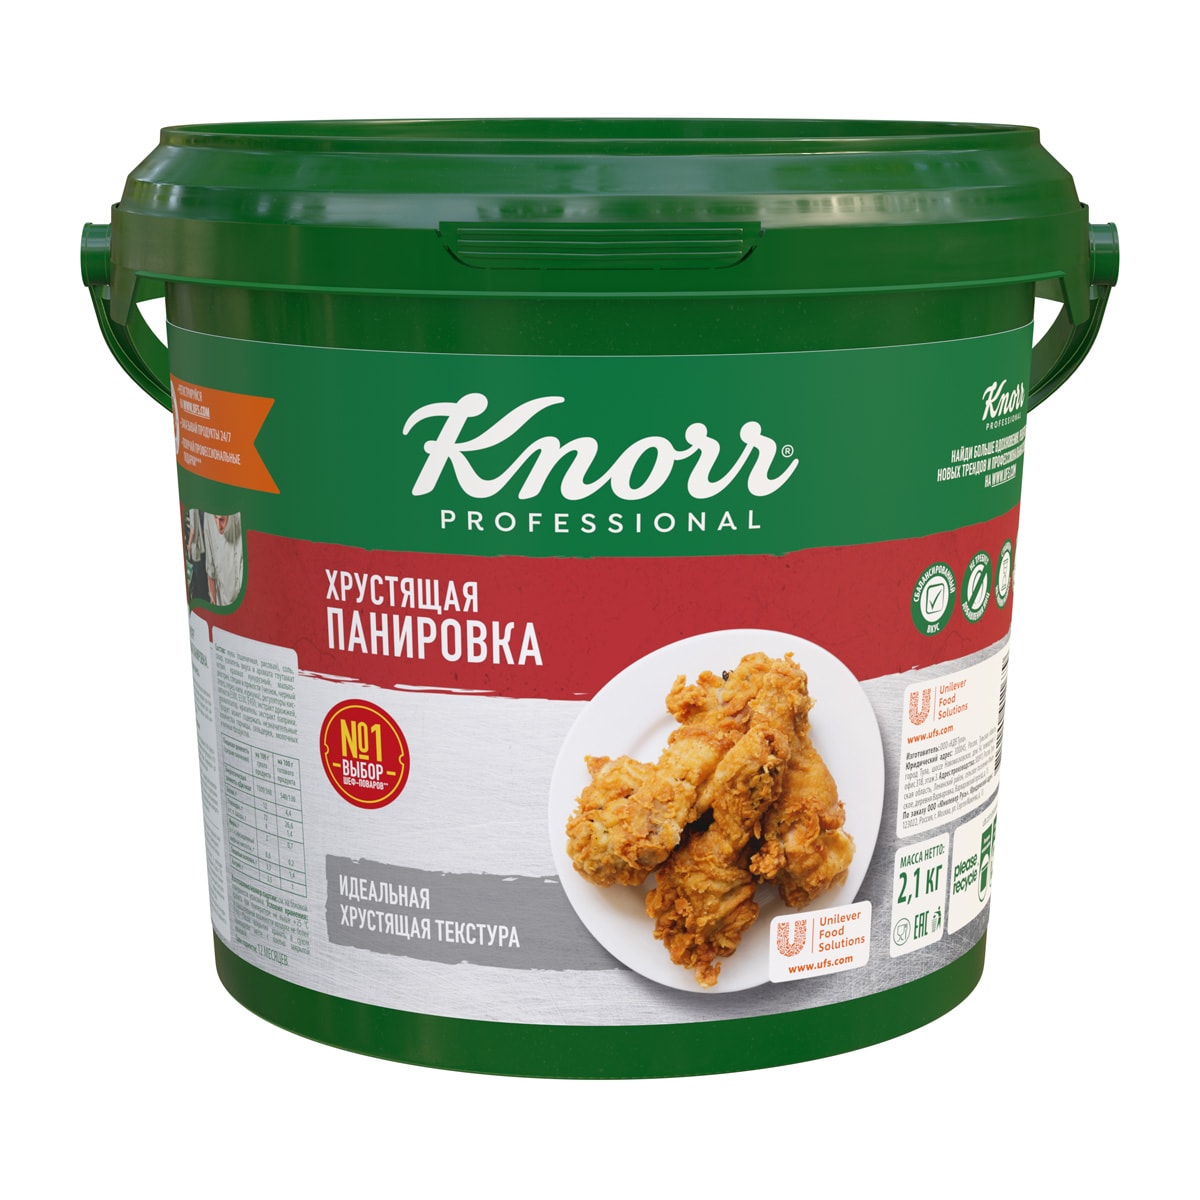 Knorr Professional Хрустящая панировка (2,1 кг) - Блюдо сохраняет хрустящую текстуру на линии раздачи и в доставке